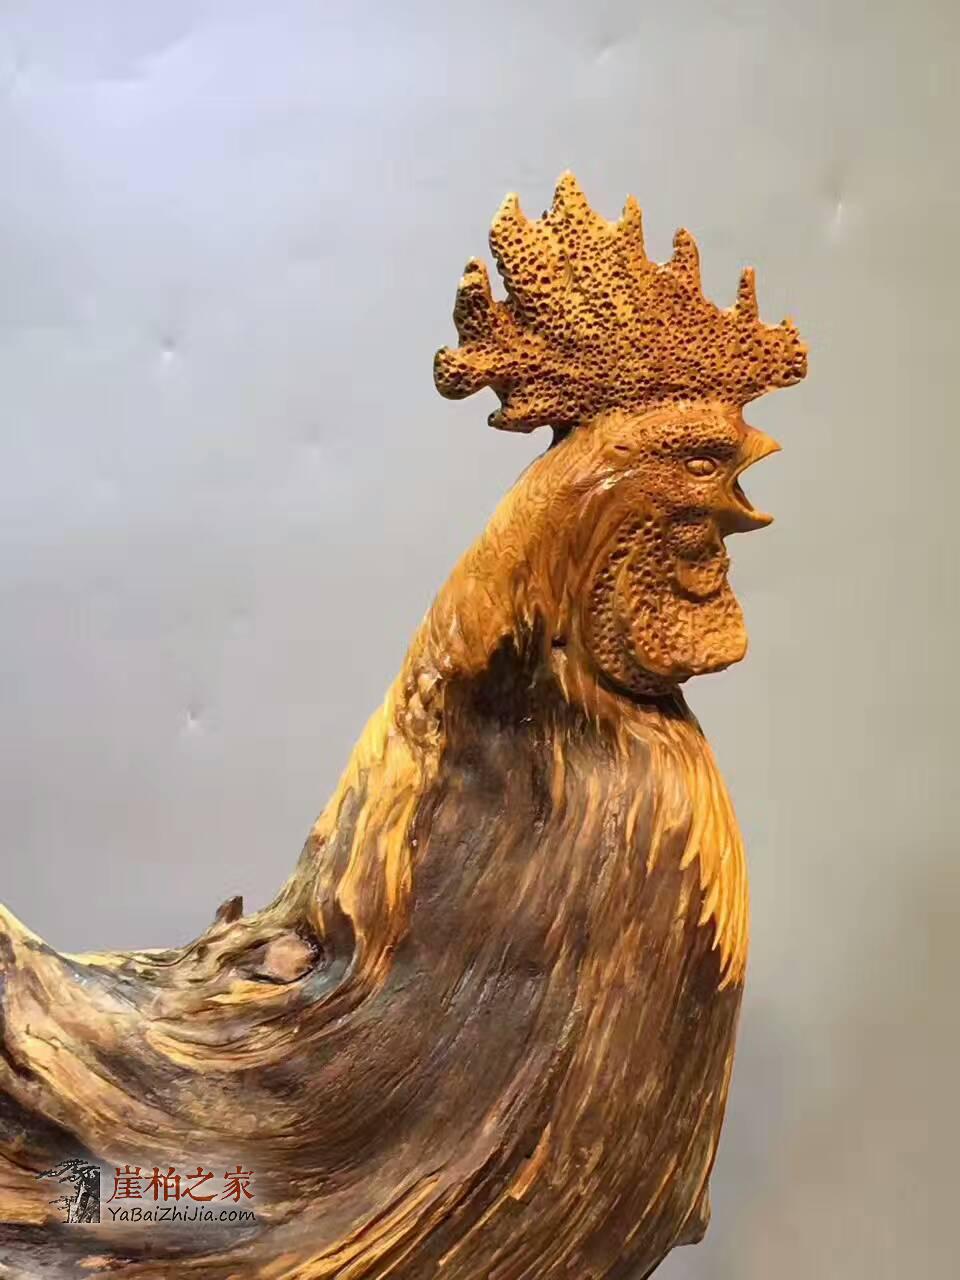 崖柏根雕《大公鸡》造型生动形象 创意礼品摆件-3